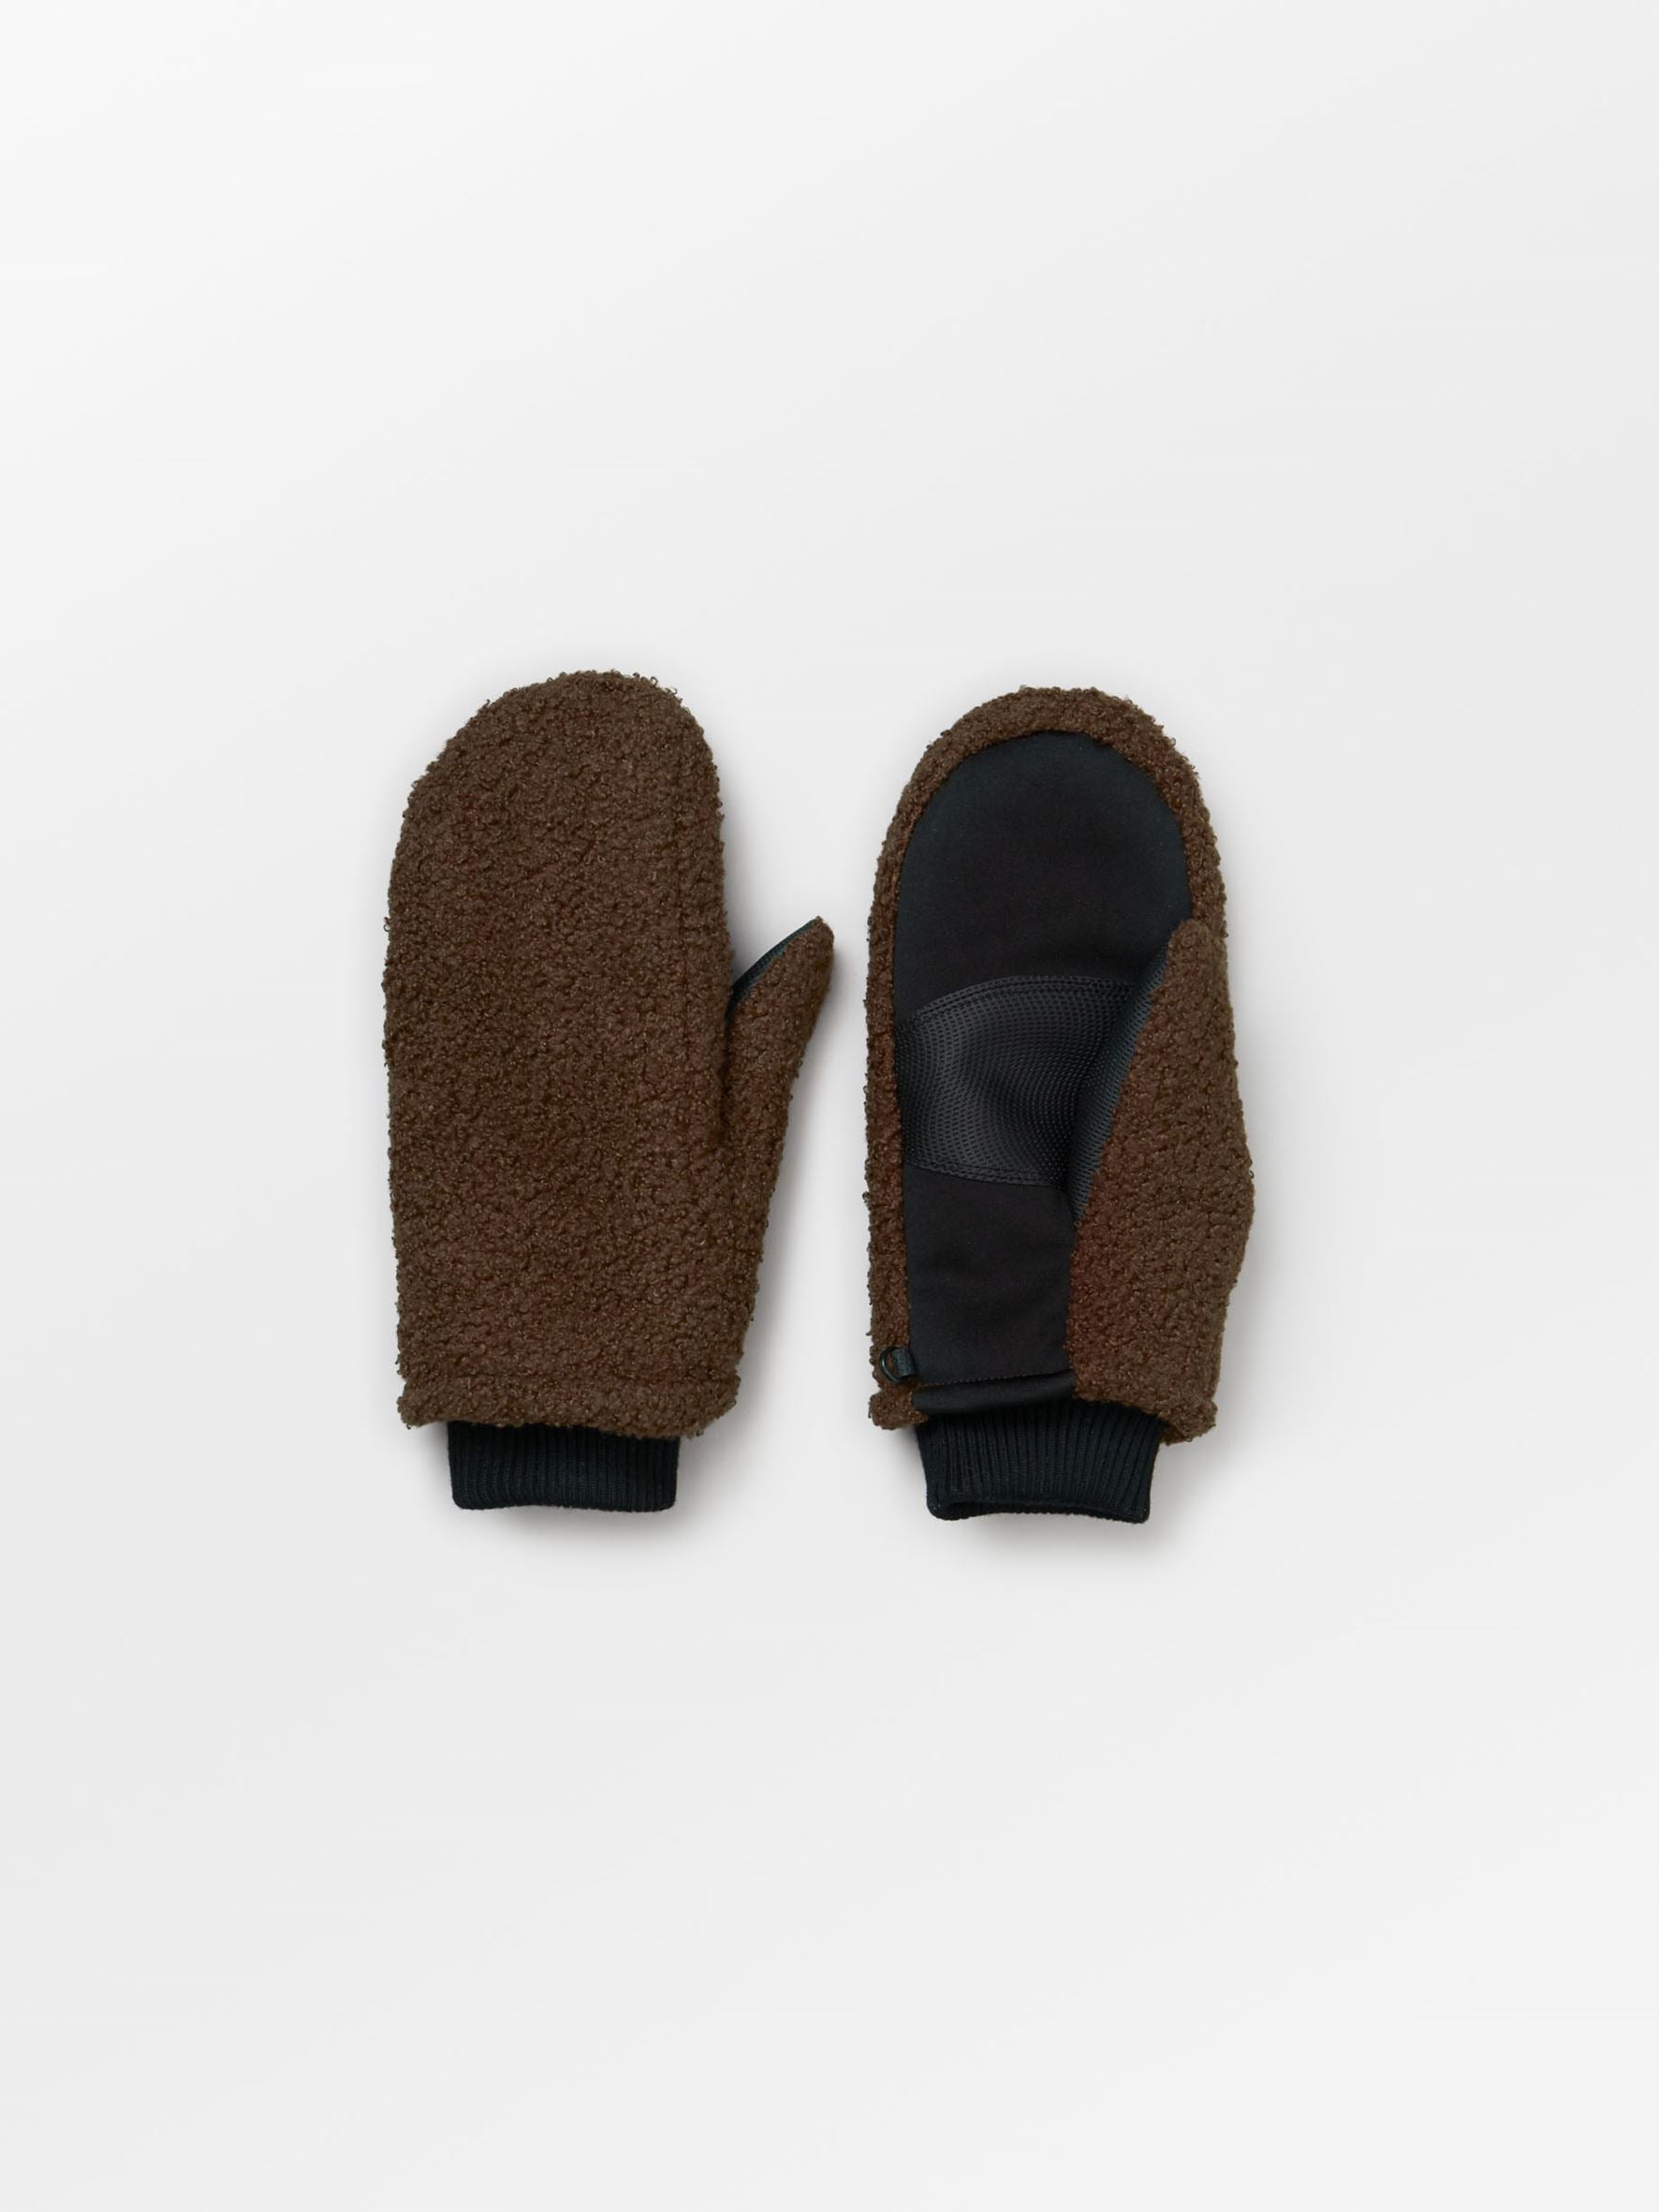 Teddy Bonna Gloves - Hot Fudge Brown Clothing   BeckSöndergaard.no